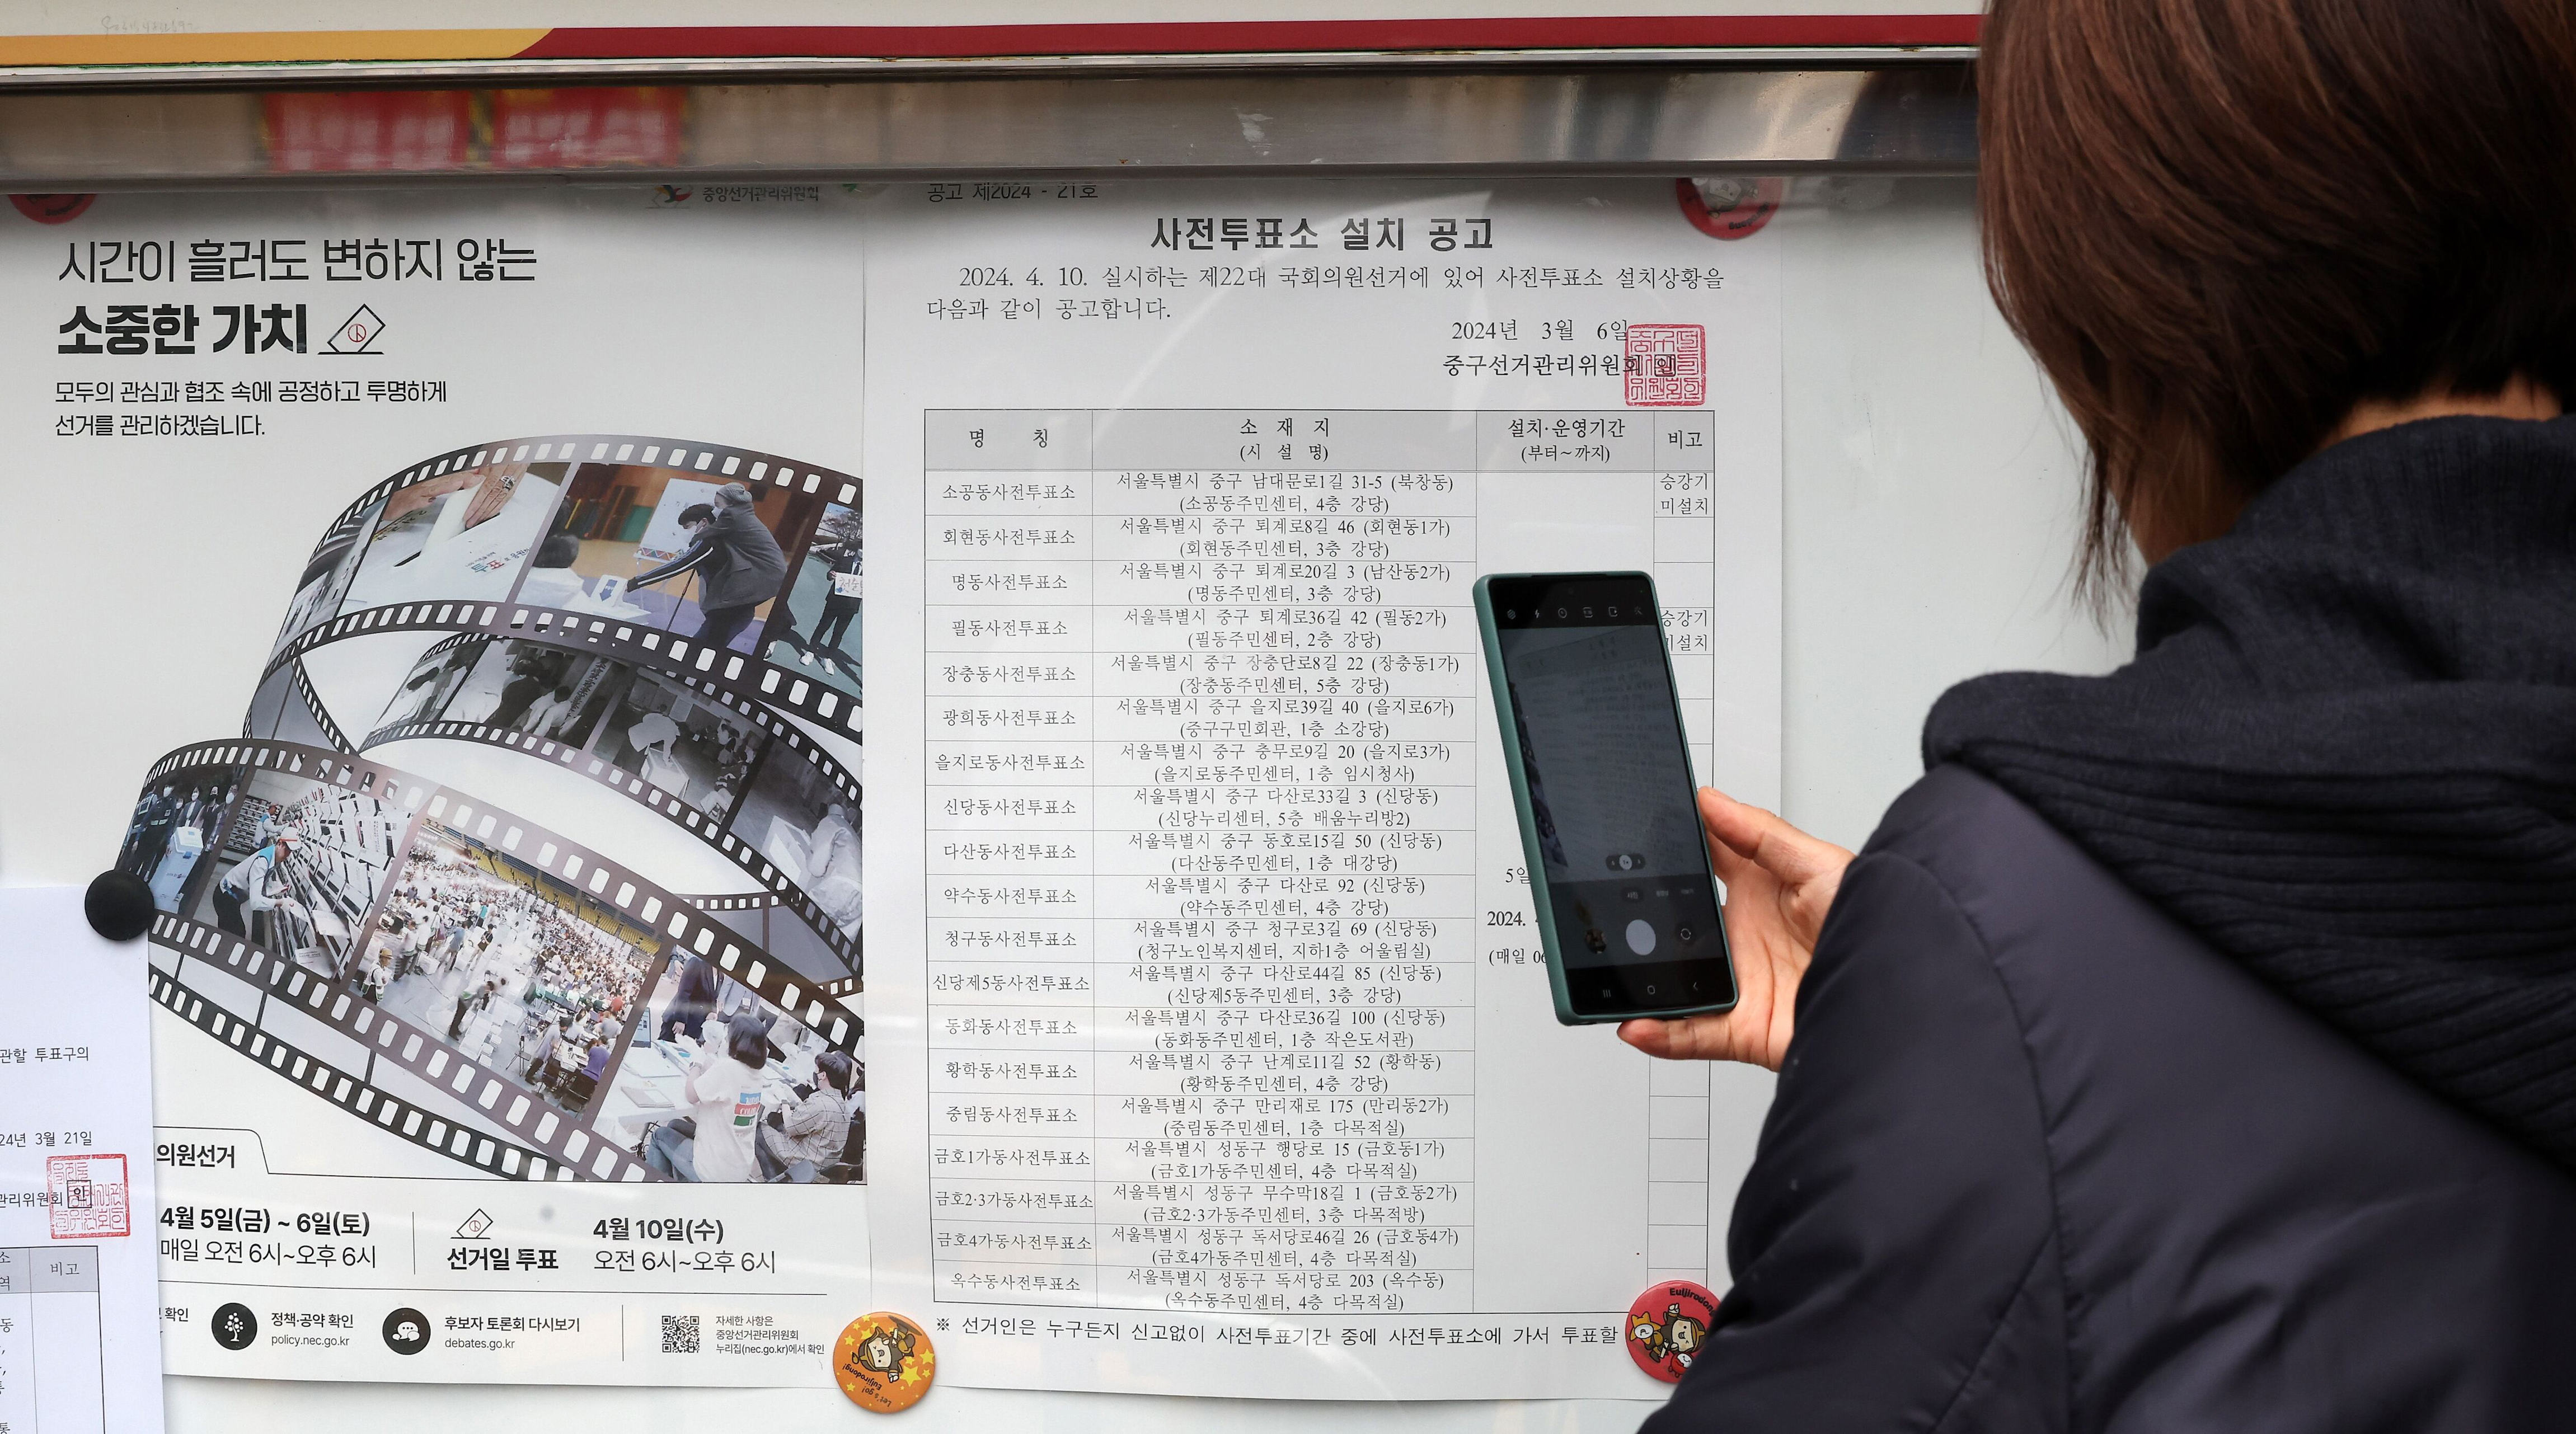 인천·양산 사전투표소서 불법 카메라 발견… 경찰 수사 착수